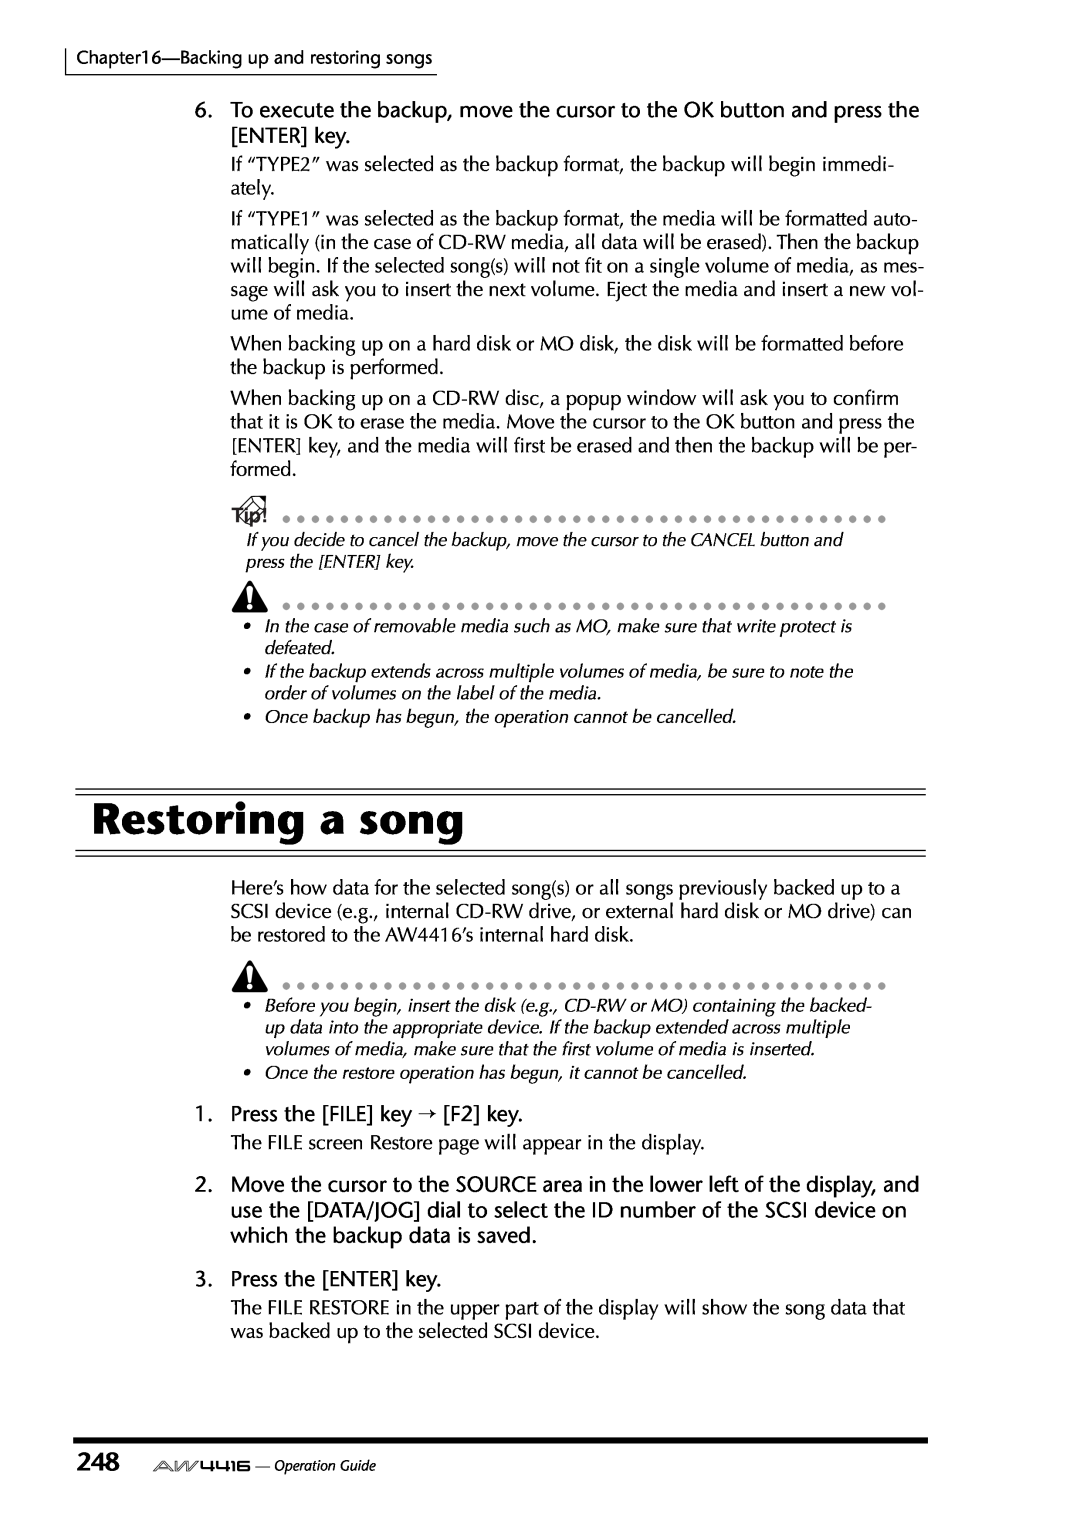 Yamaha AW4416 manual Restoring a song, Press the FILE key → F2 key, Press the ENTER key 